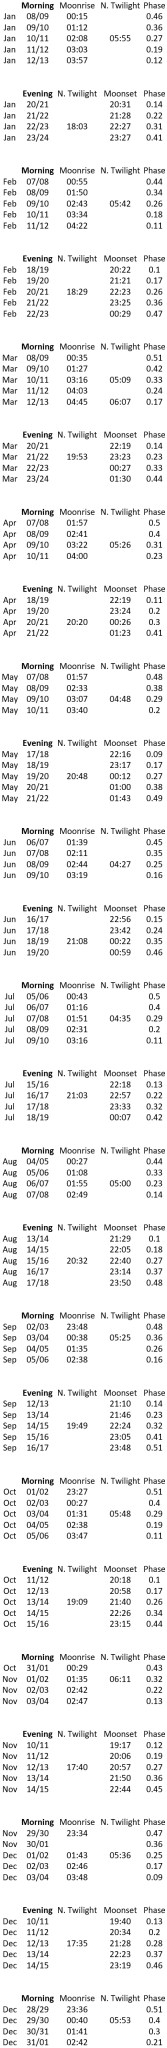 NASA Observing Schedule 2018.